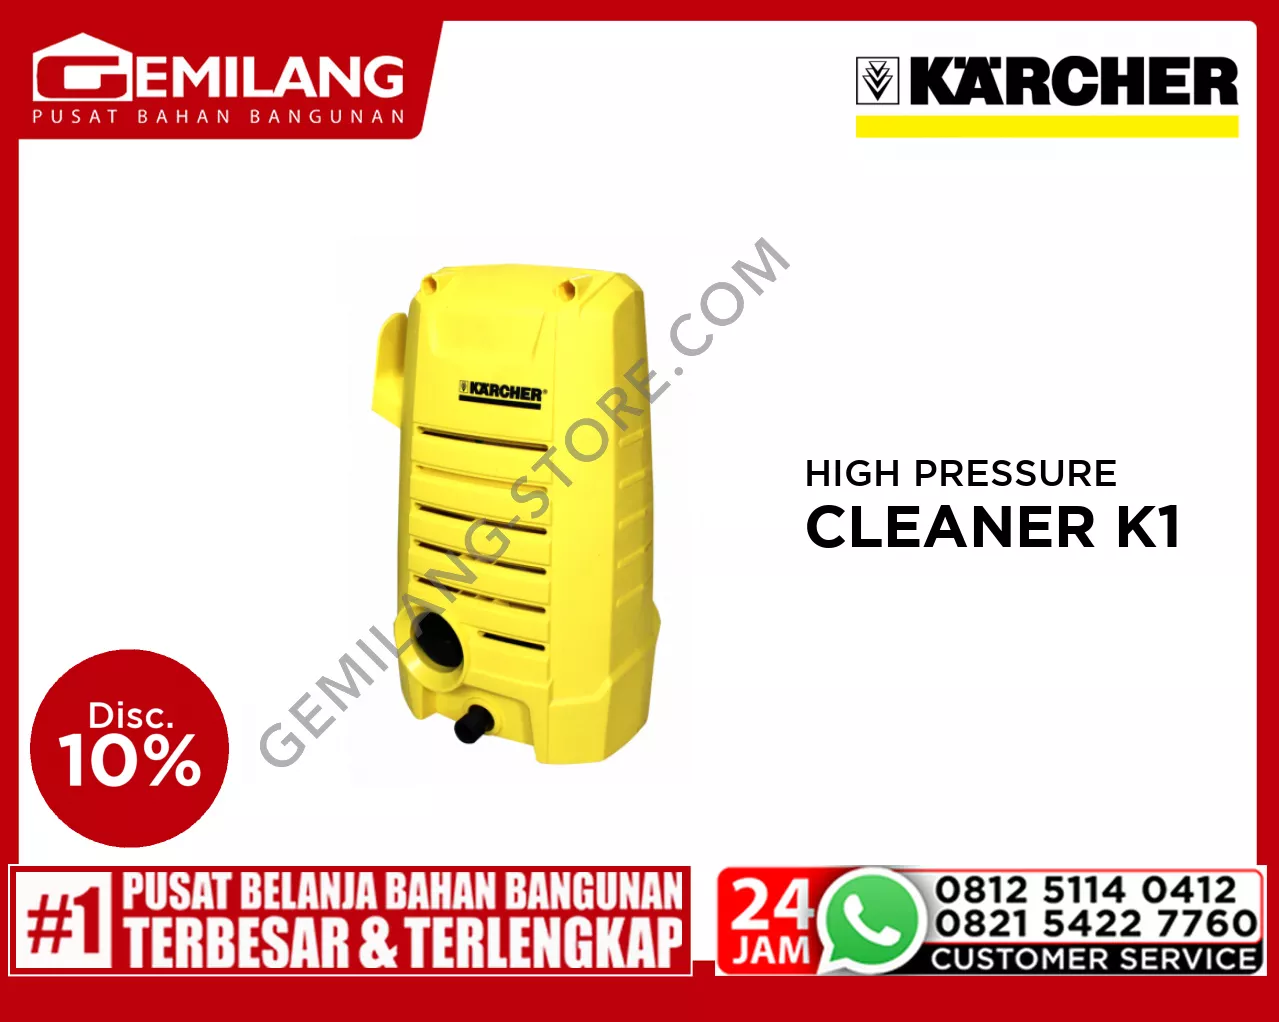 KARCHER HIGH PRESSURE CLEANER K1